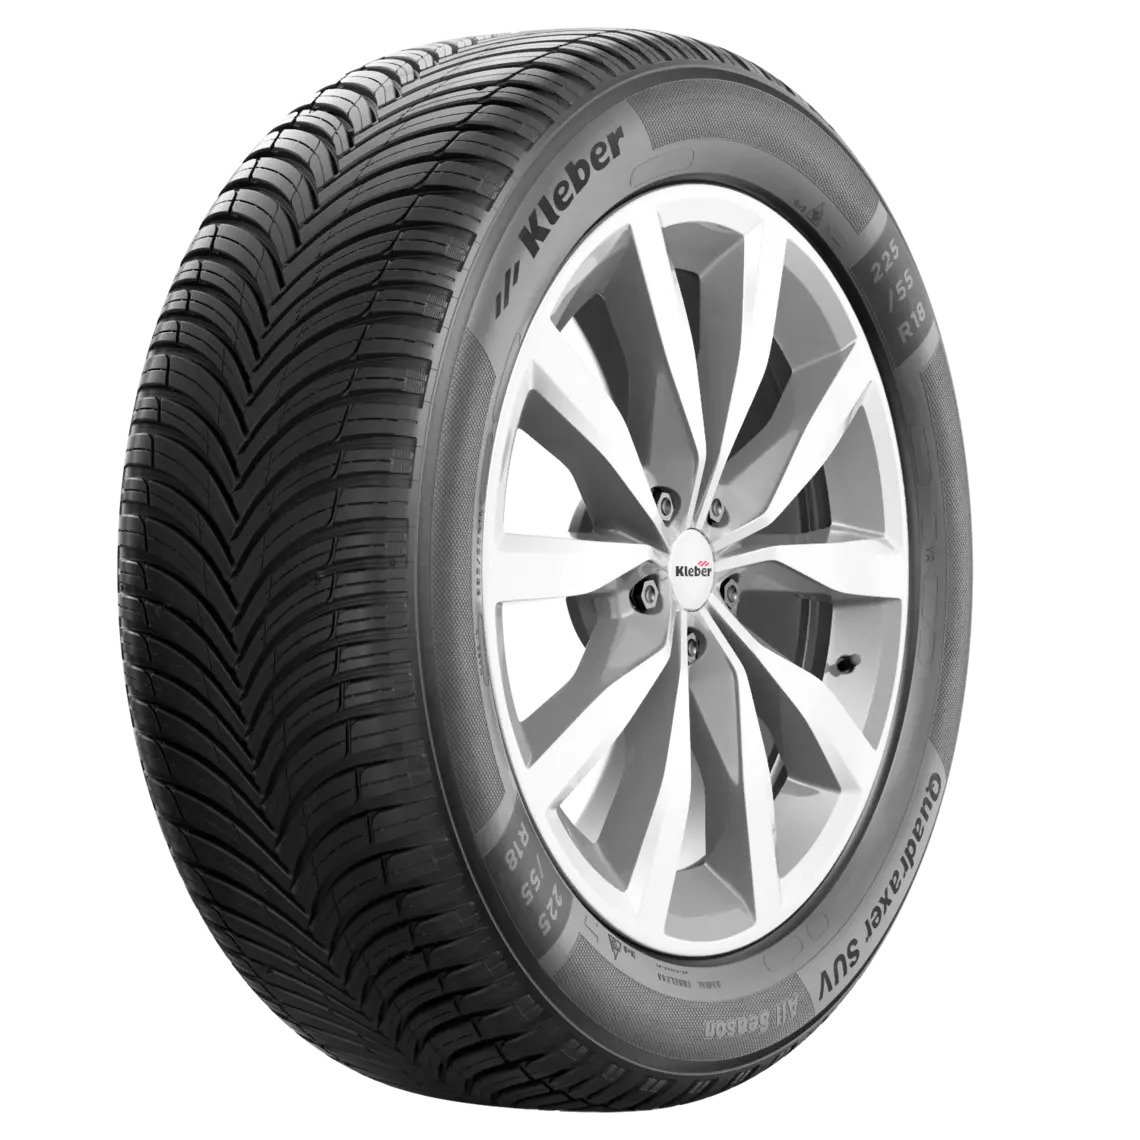 Kleber QUADRAXER 3 M+S 3PMSF 185/50 R16 81H celoročné osobné pneumatiky